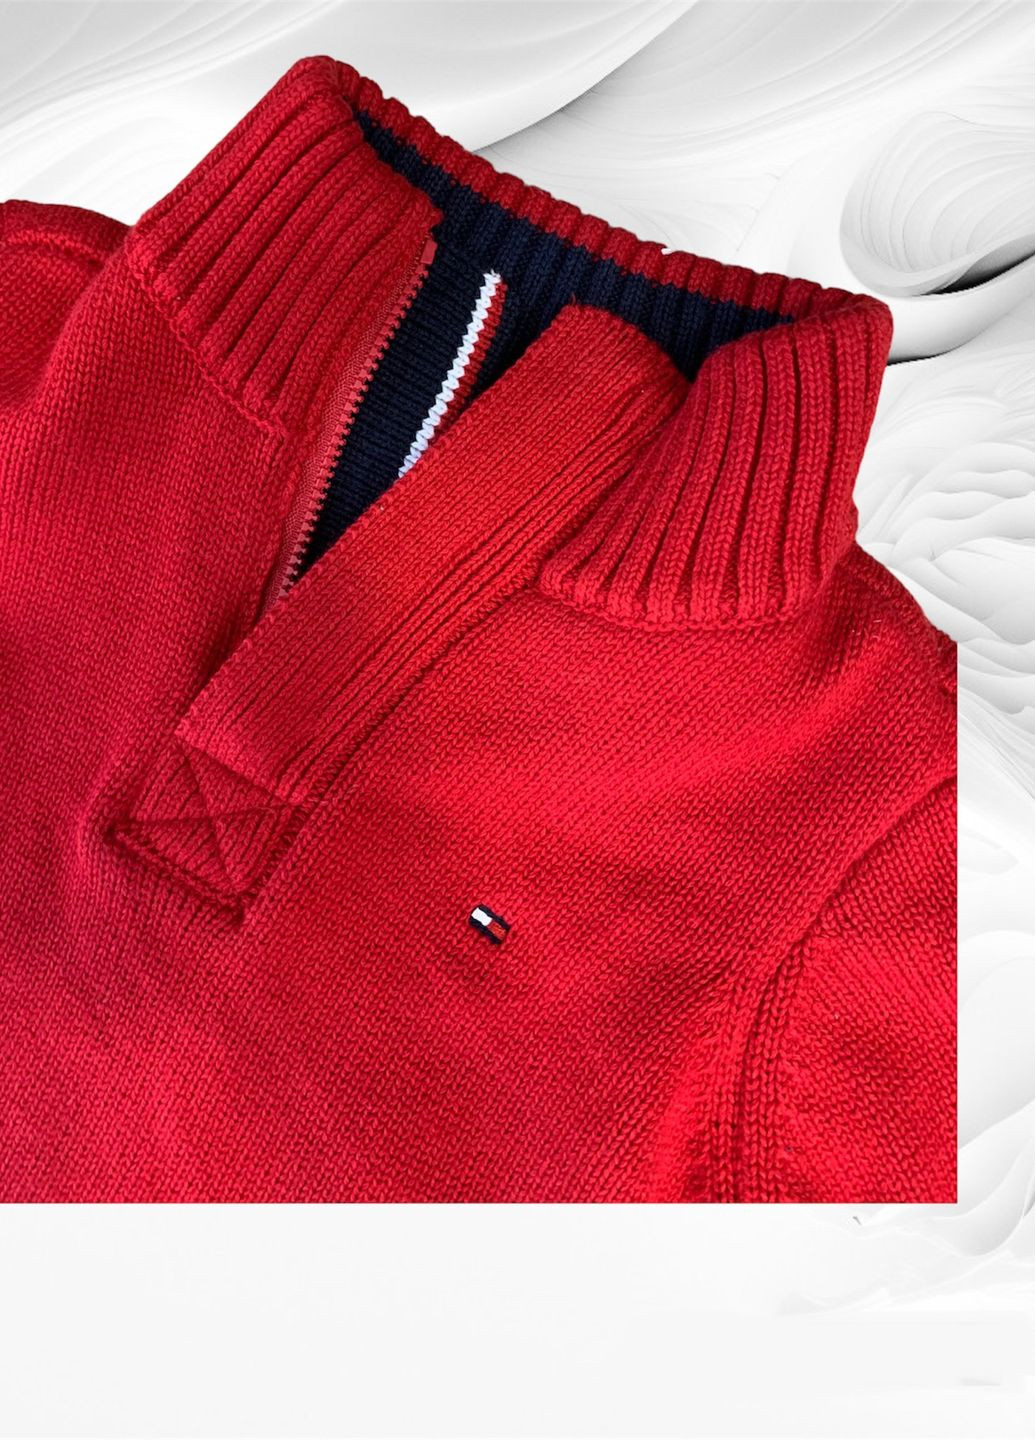 Красный свитер Tommy Hilfiger